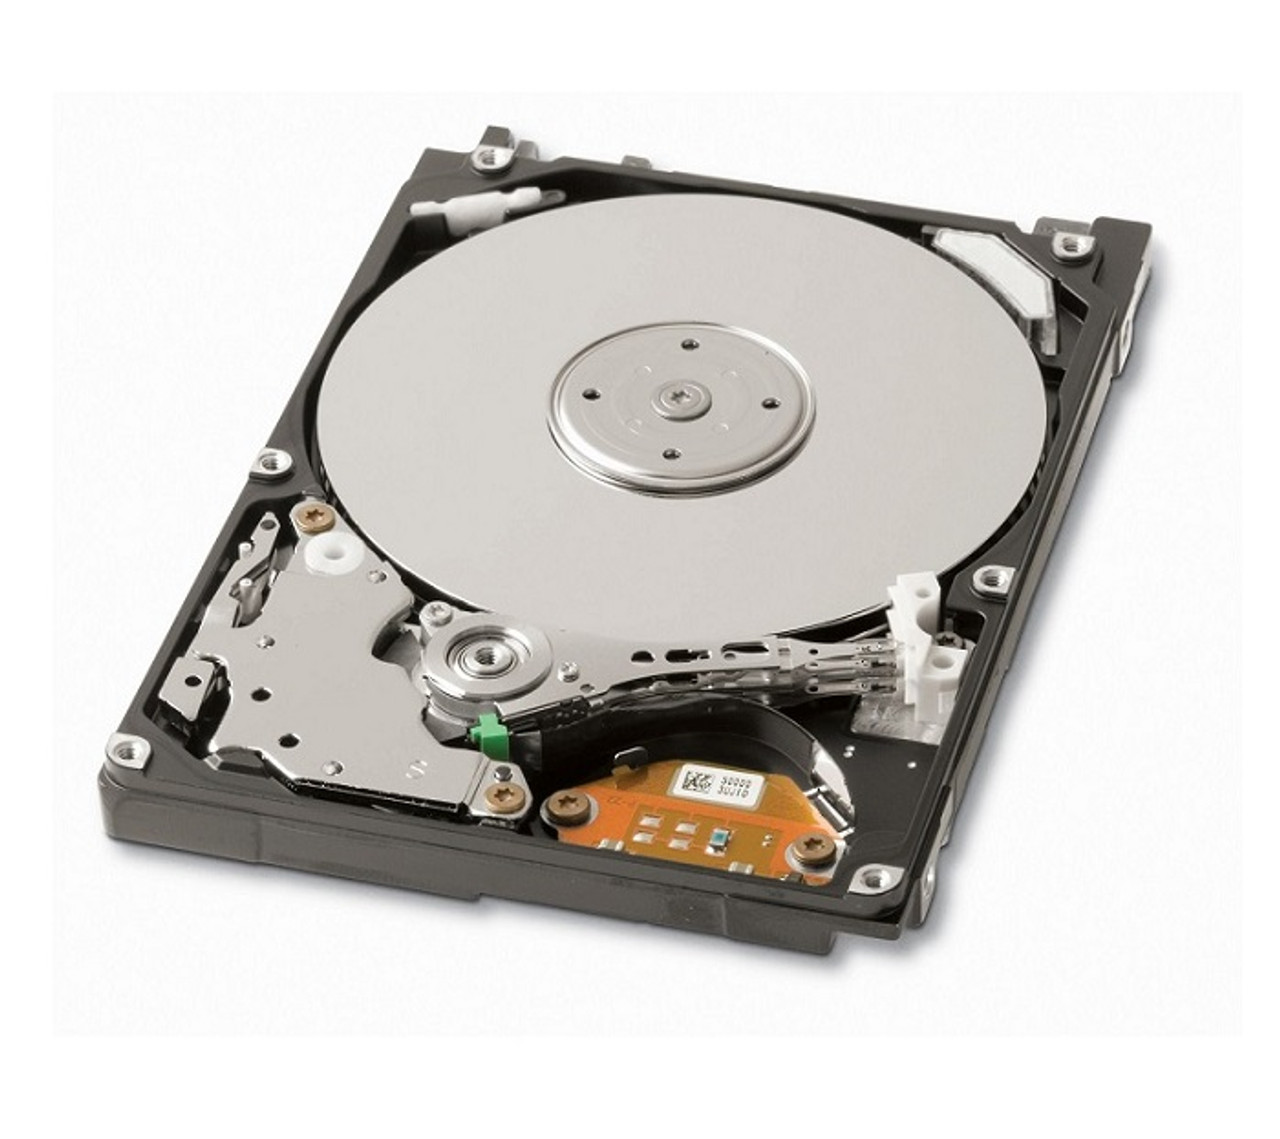 0X1701 - Dell 30GB 4200RPM ATA/IDE 2.5-inch Hard Disk Drive for Latitude D400